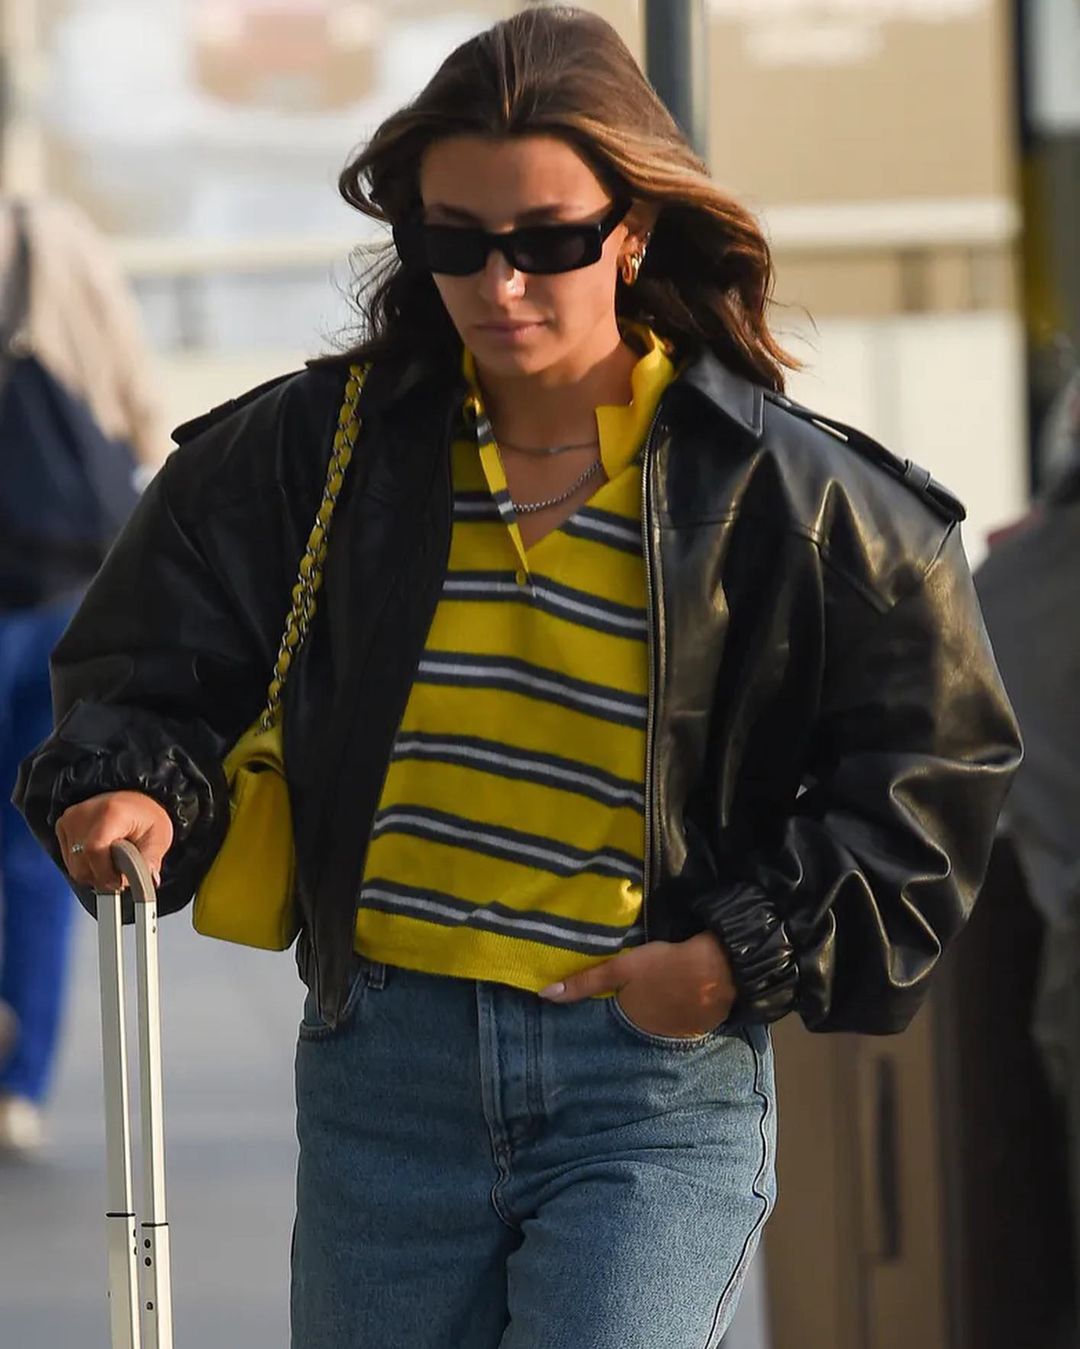 Julia Wieniawa in a yellow striped polo shirt